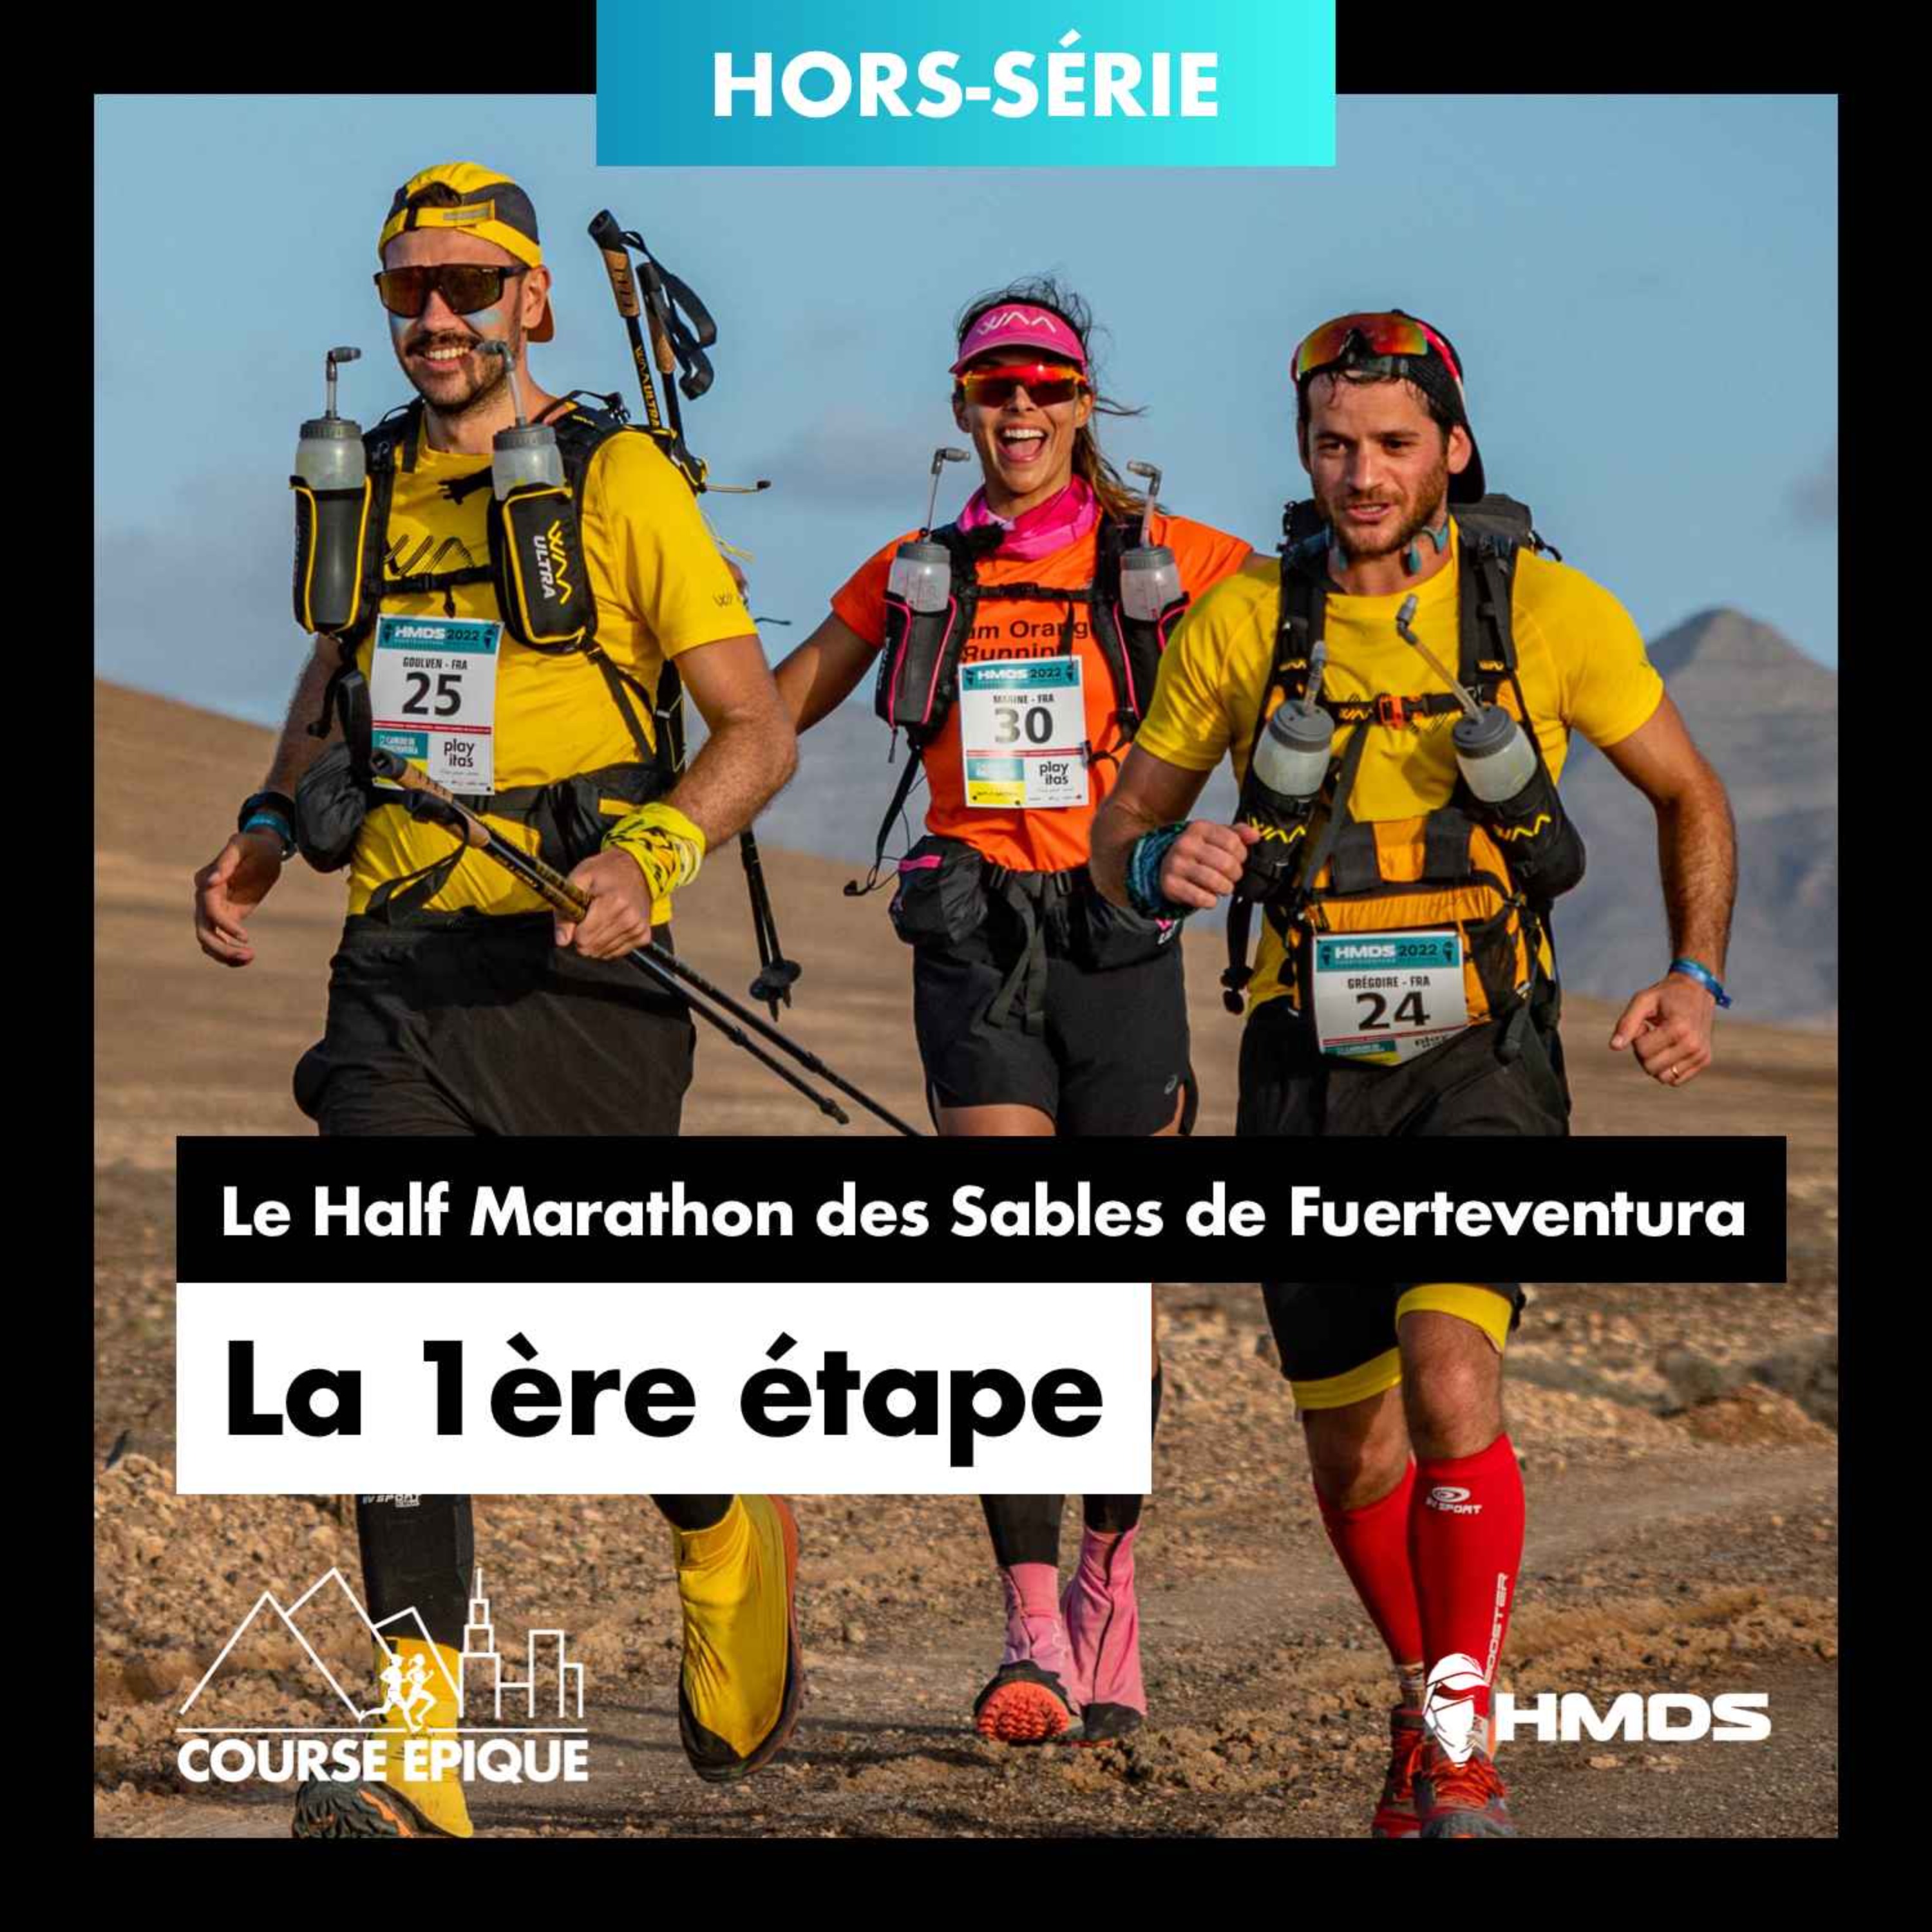 [Hors-série] La 1ère étape - Le Half Marathon des Sables de Fuerteventura avec Marine Lorphelin, Hélène Cloet et Major Mouvement